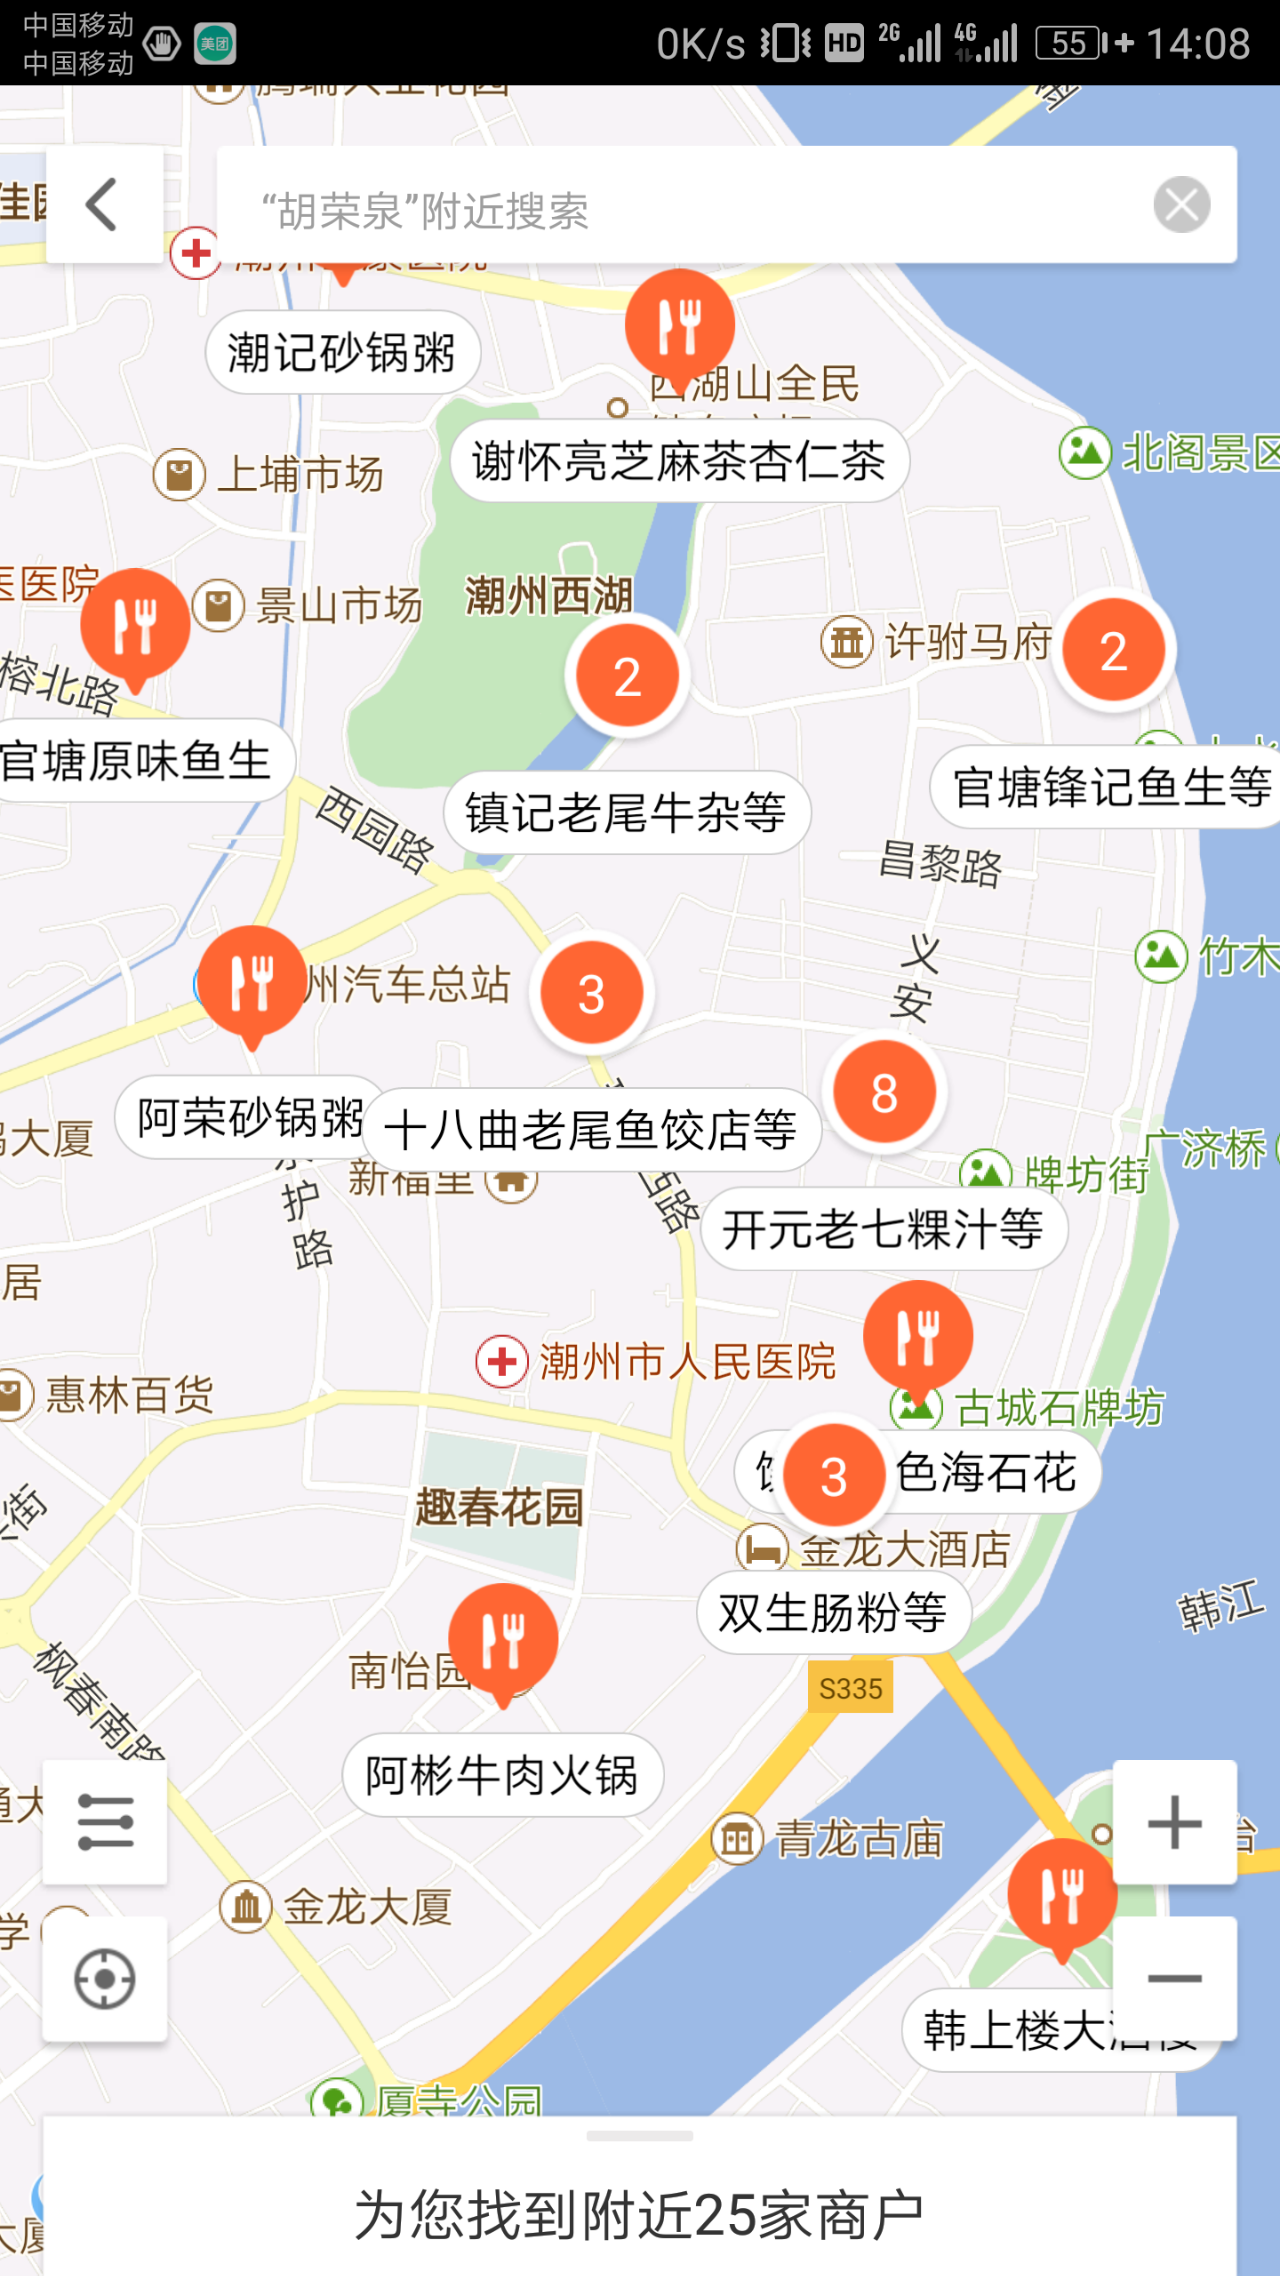 潮州财富中心美食地图图片